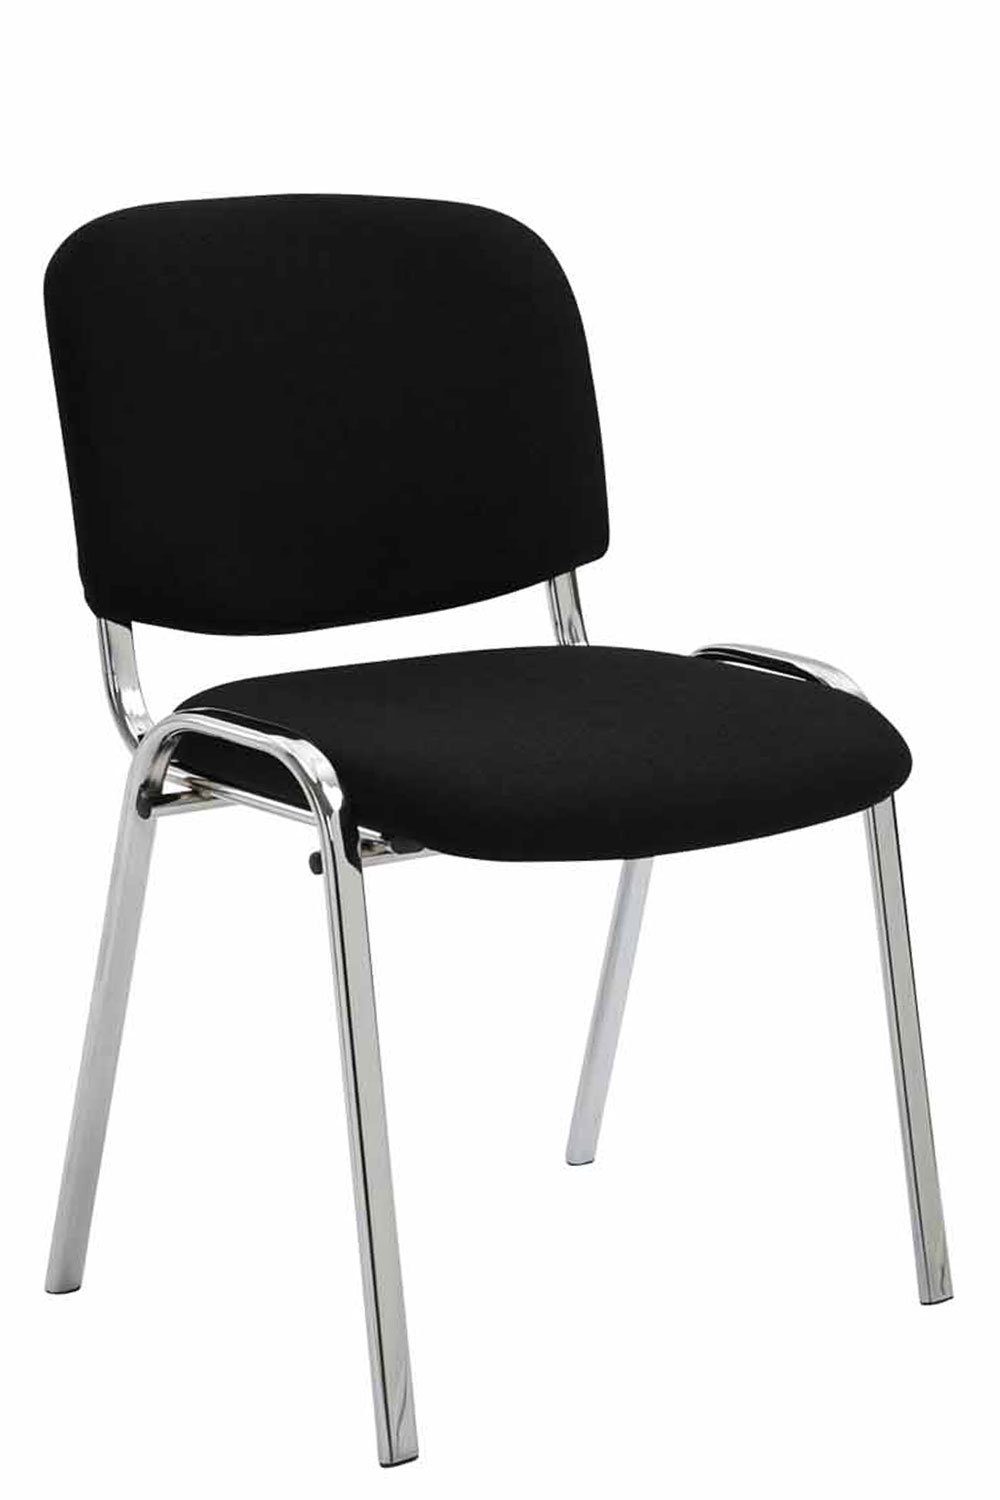 TPFLiving Besucherstuhl Keen mit hochwertiger Polsterung - Konferenzstuhl (Besprechungsstuhl - Warteraumstuhl - Messestuhl), Gestell: Metall chrom - Sitzfläche: Stoff schwarz